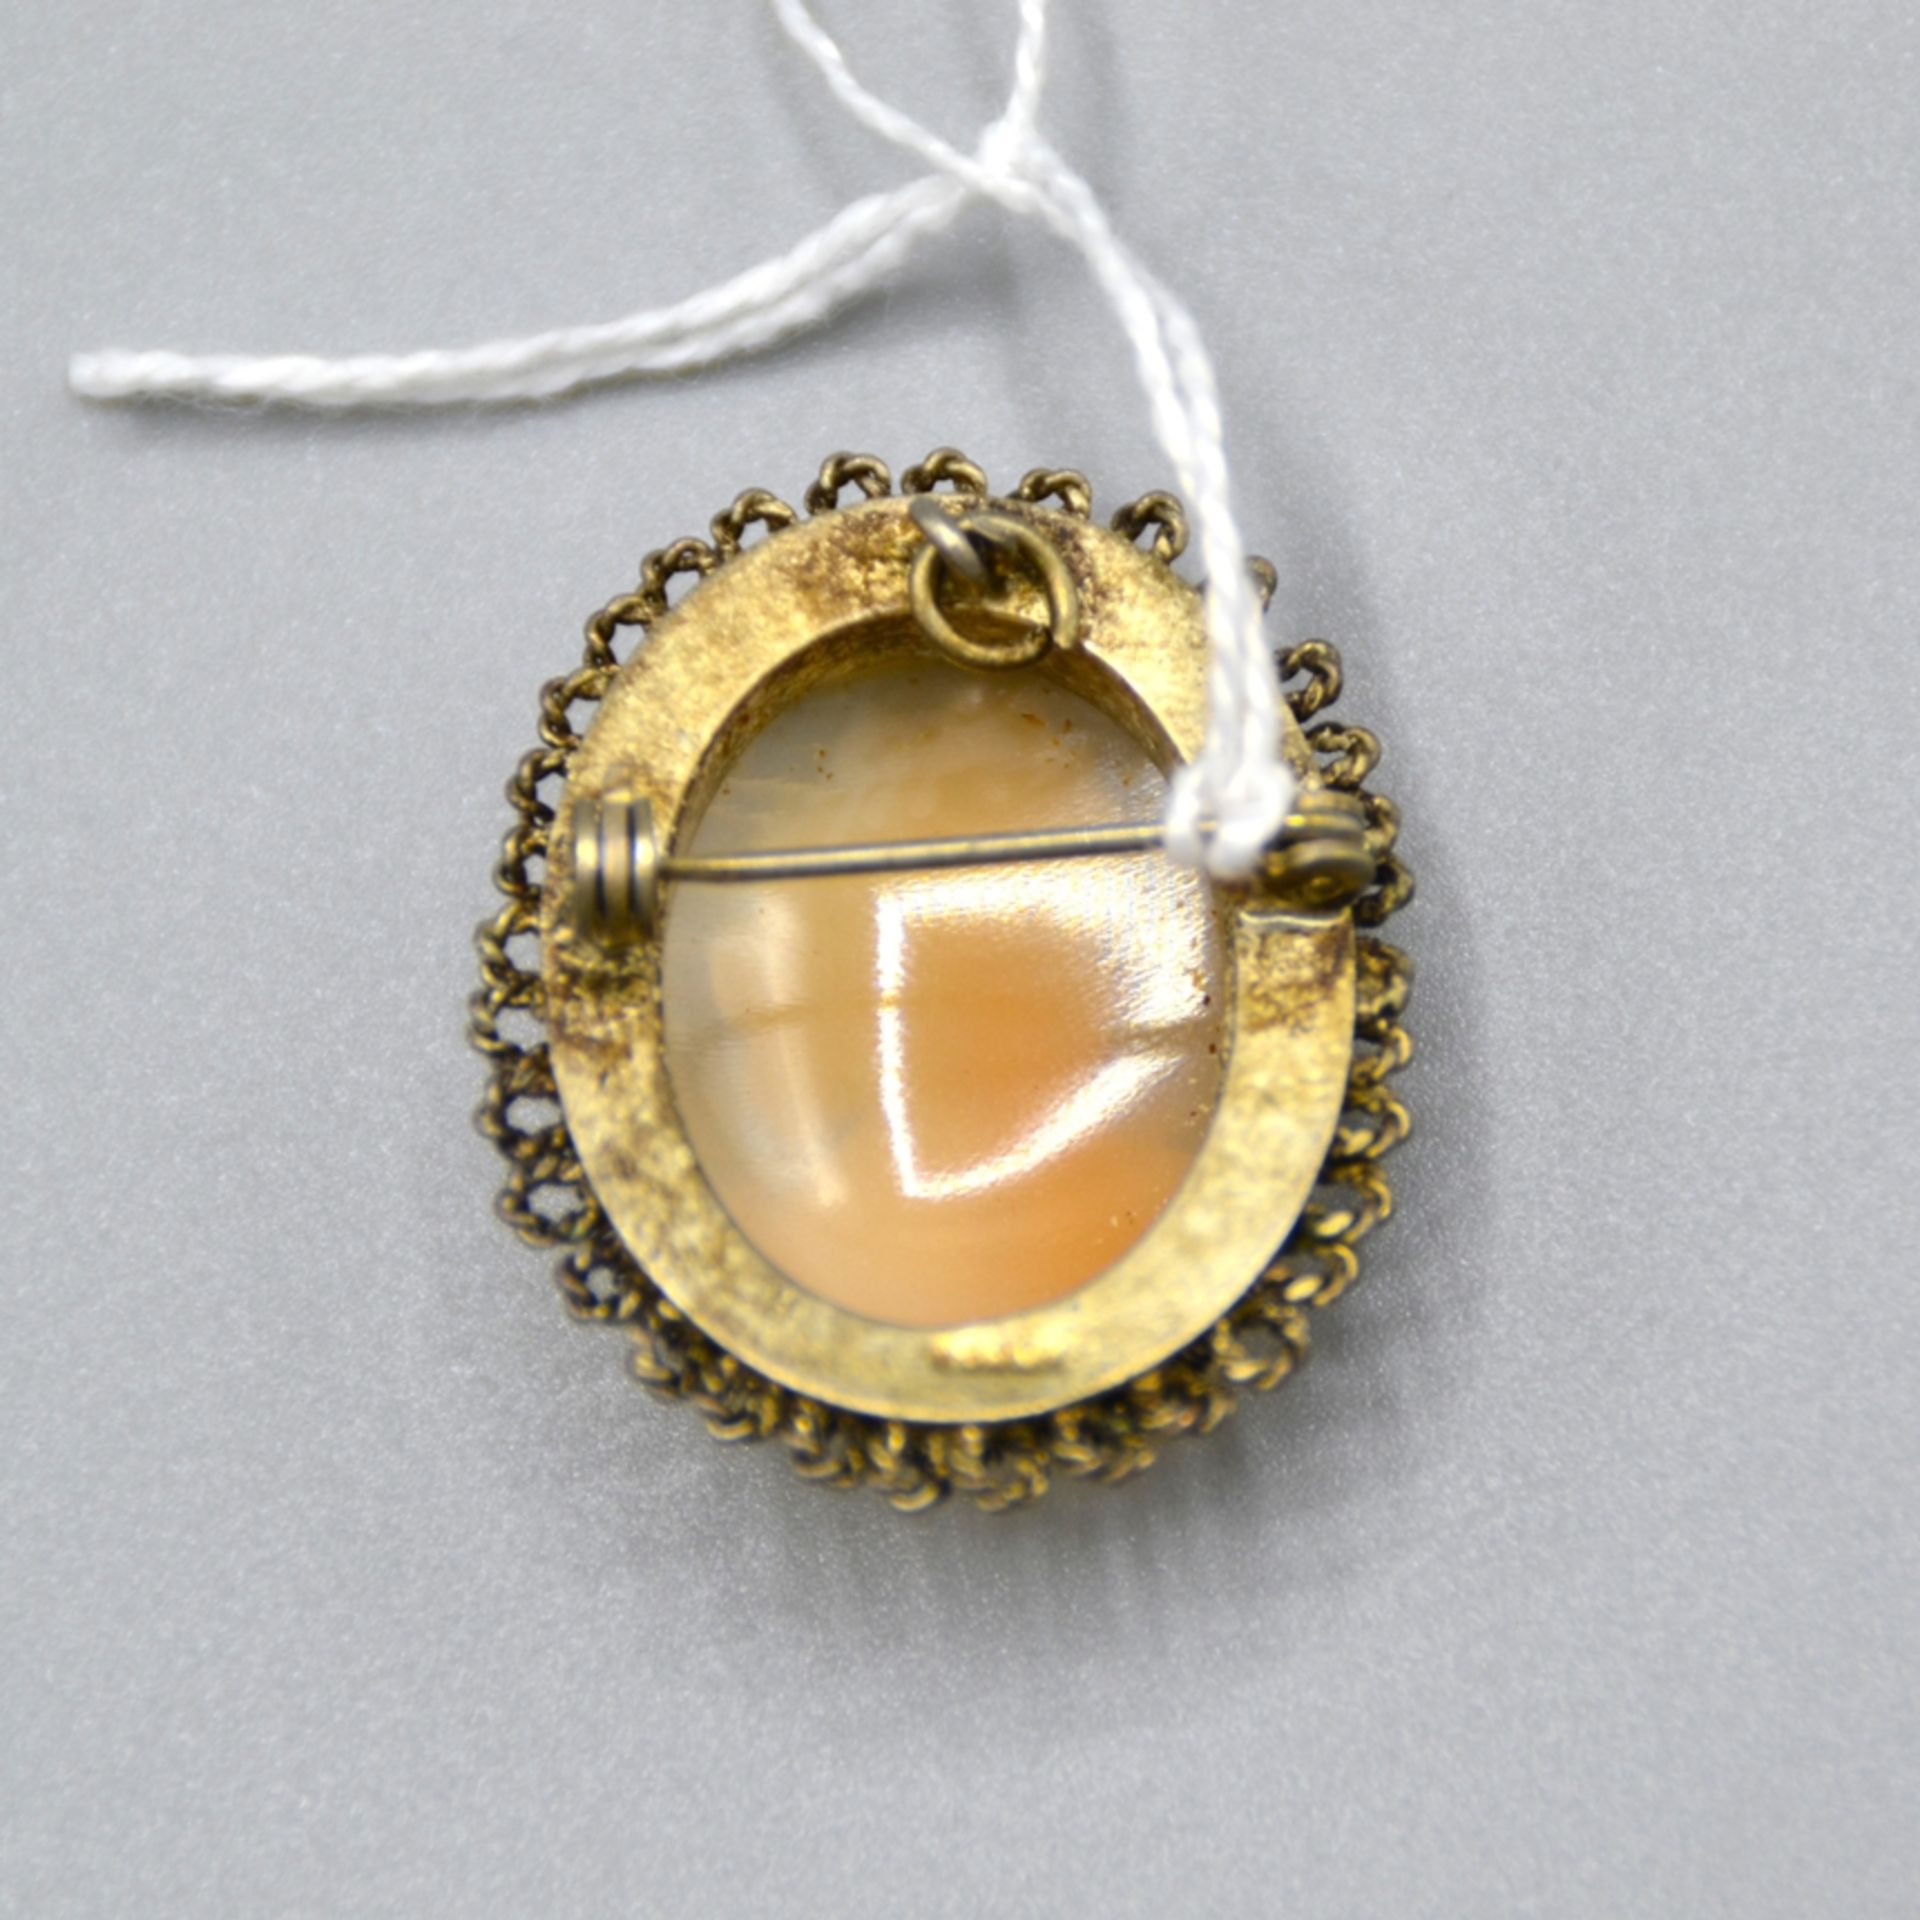 Muschelkamee Brosche Anhänger wohl Silber vergoldet, ca. 3,3 x 2,6 cm, 7,2 g - Bild 2 aus 2